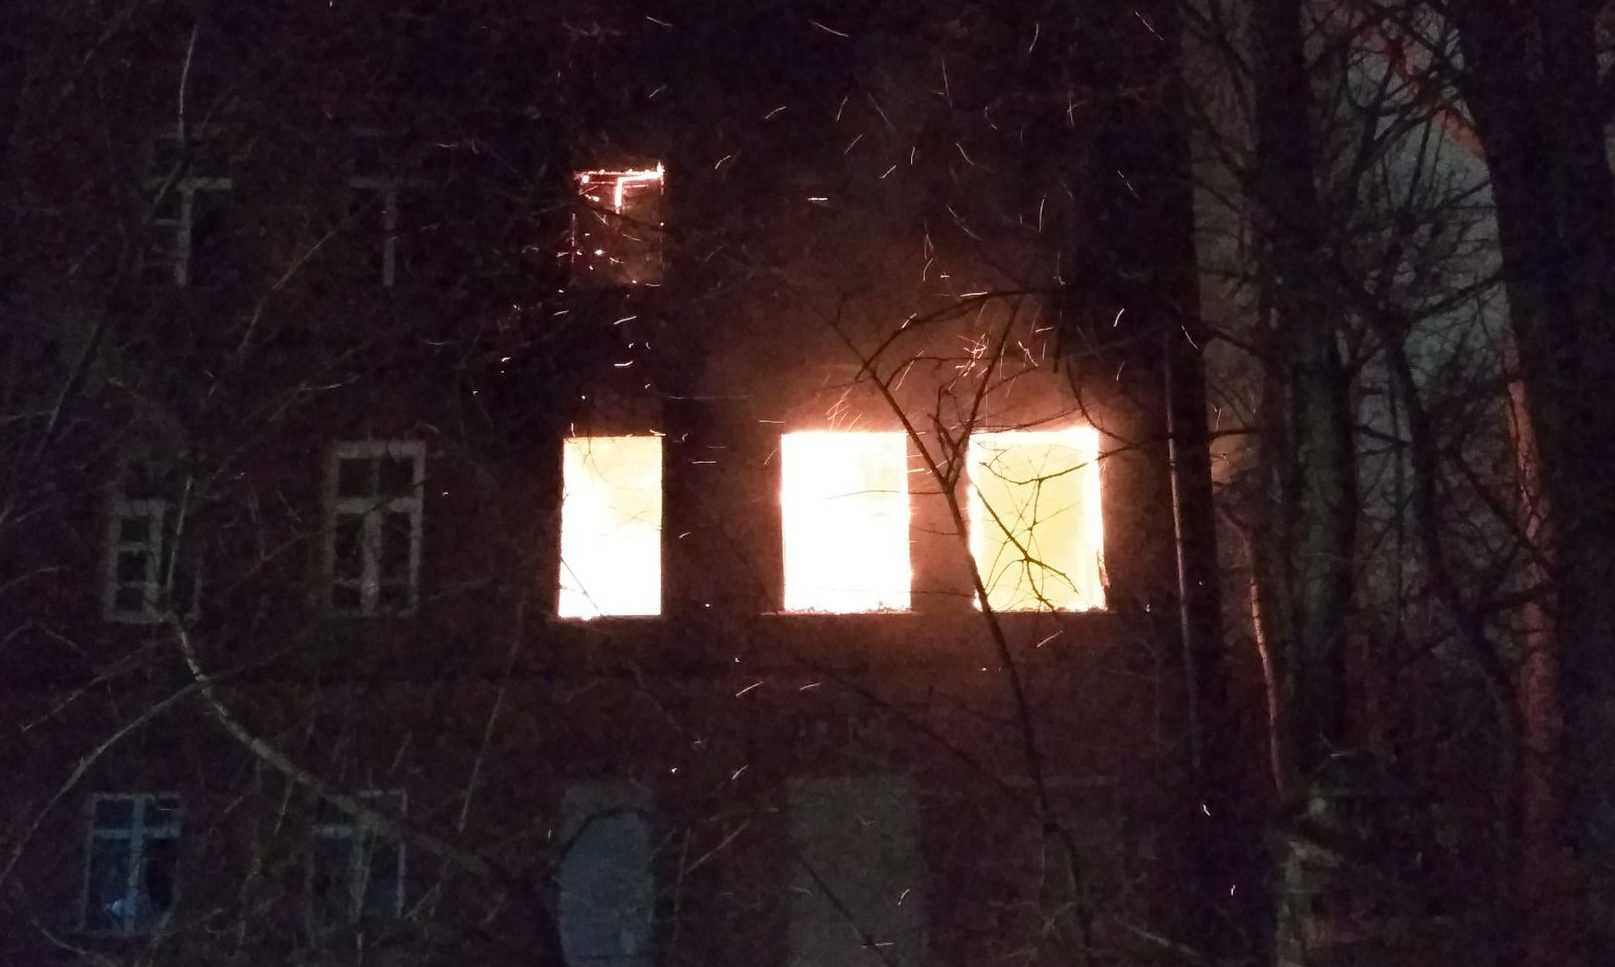 Фото: пресс-служба МЧС по Владимирской области. Пожар в здании бывшего юрфака 1 апреля 2018 года